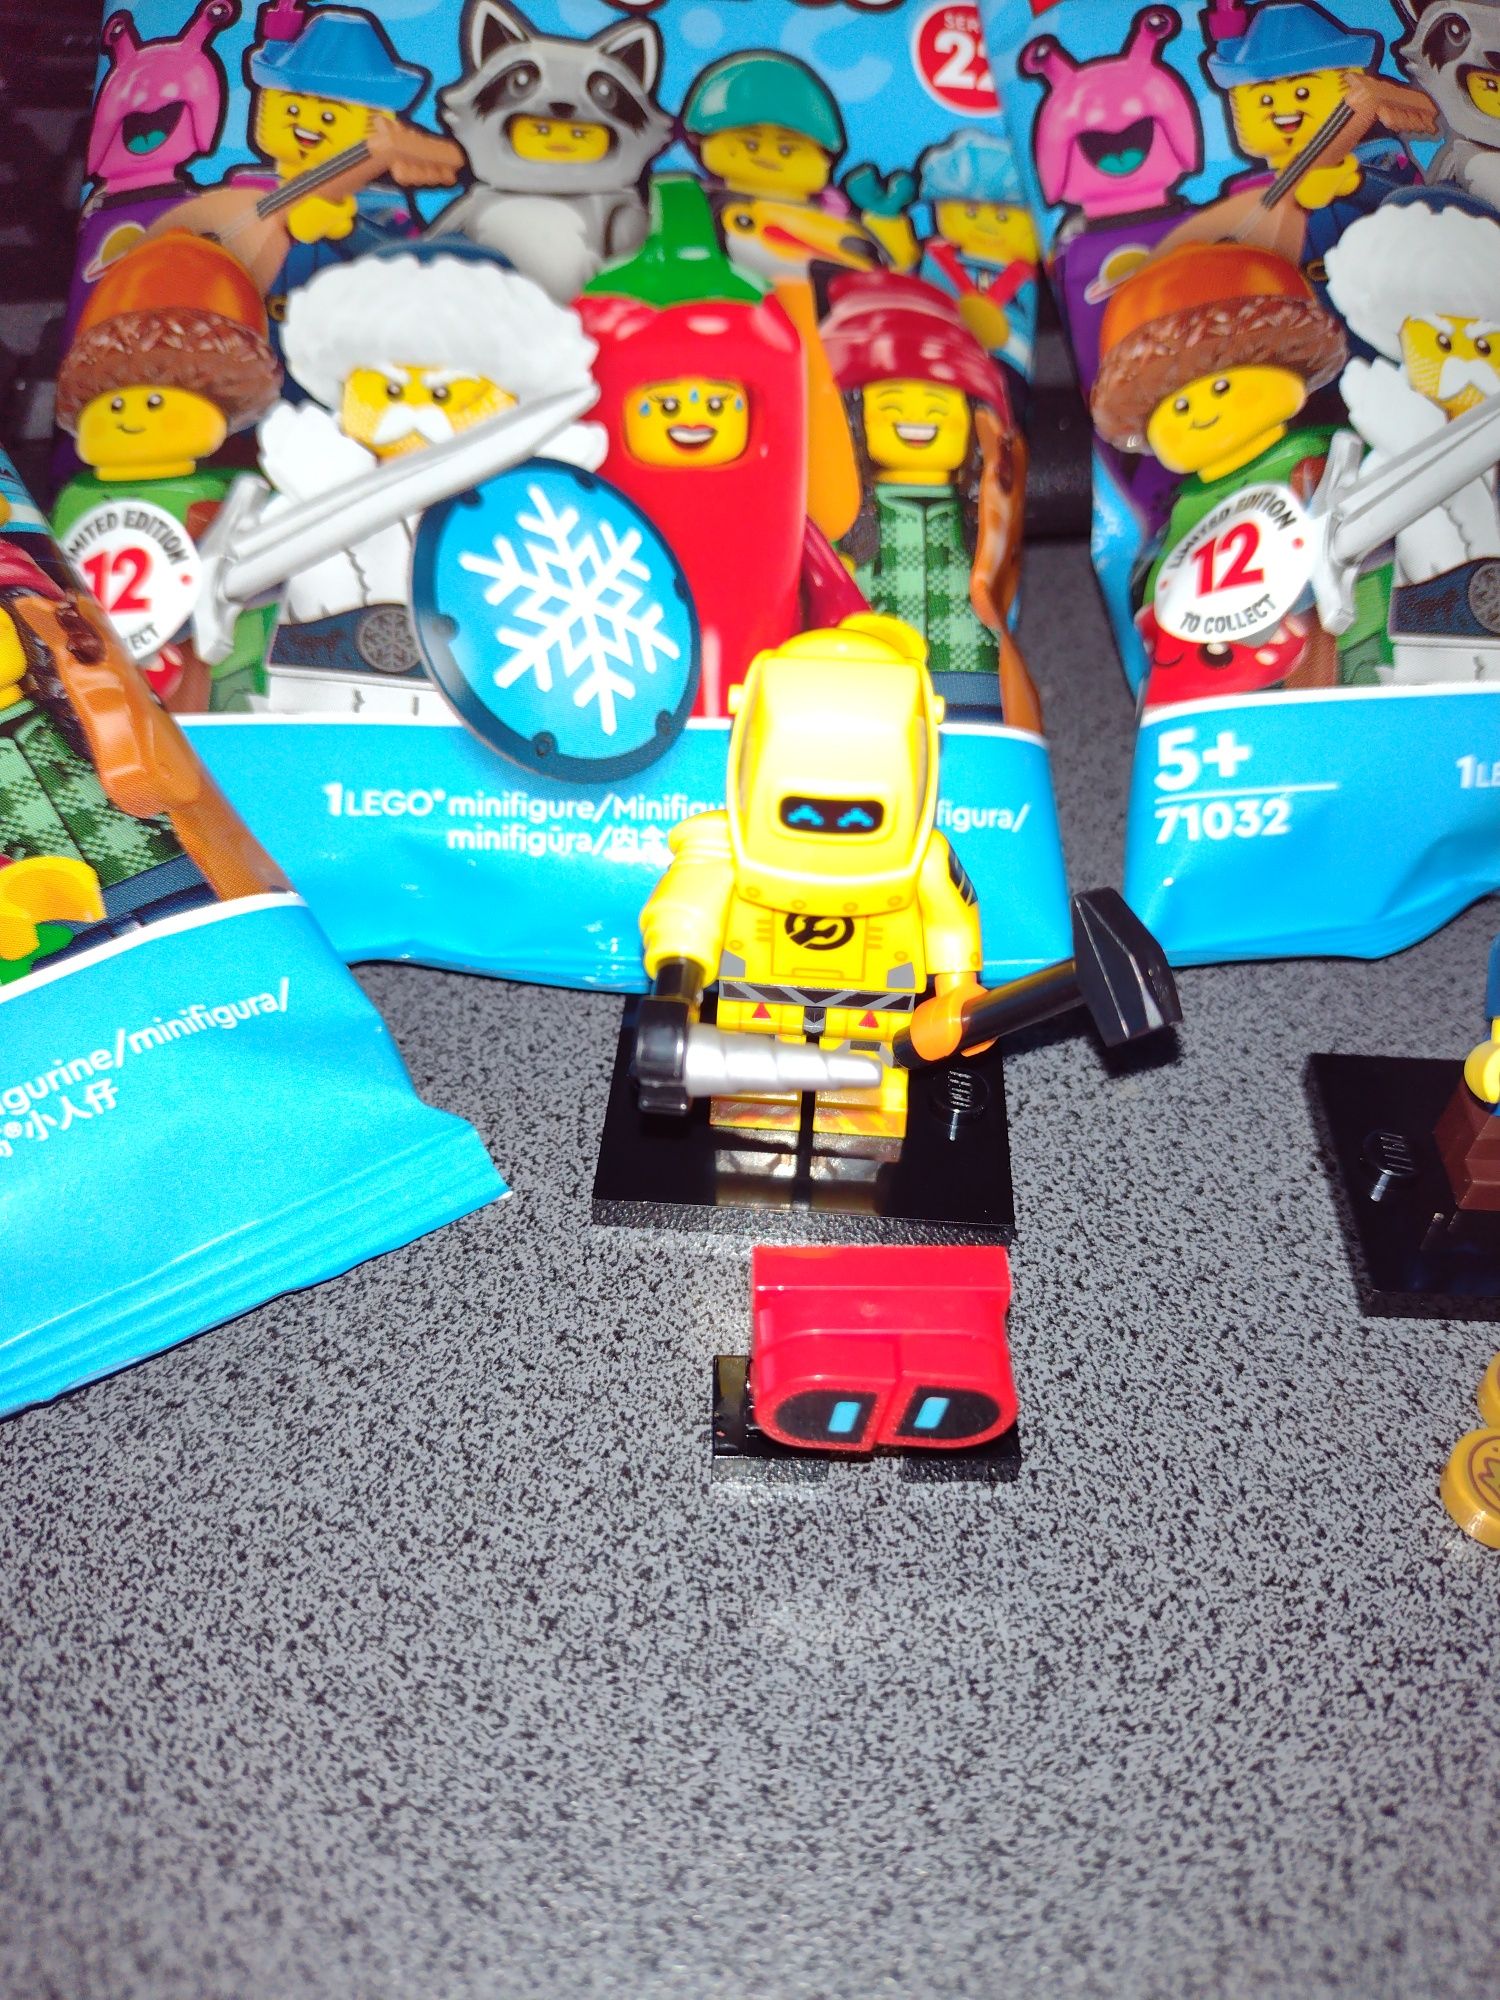 Lego minifigurine seria 22